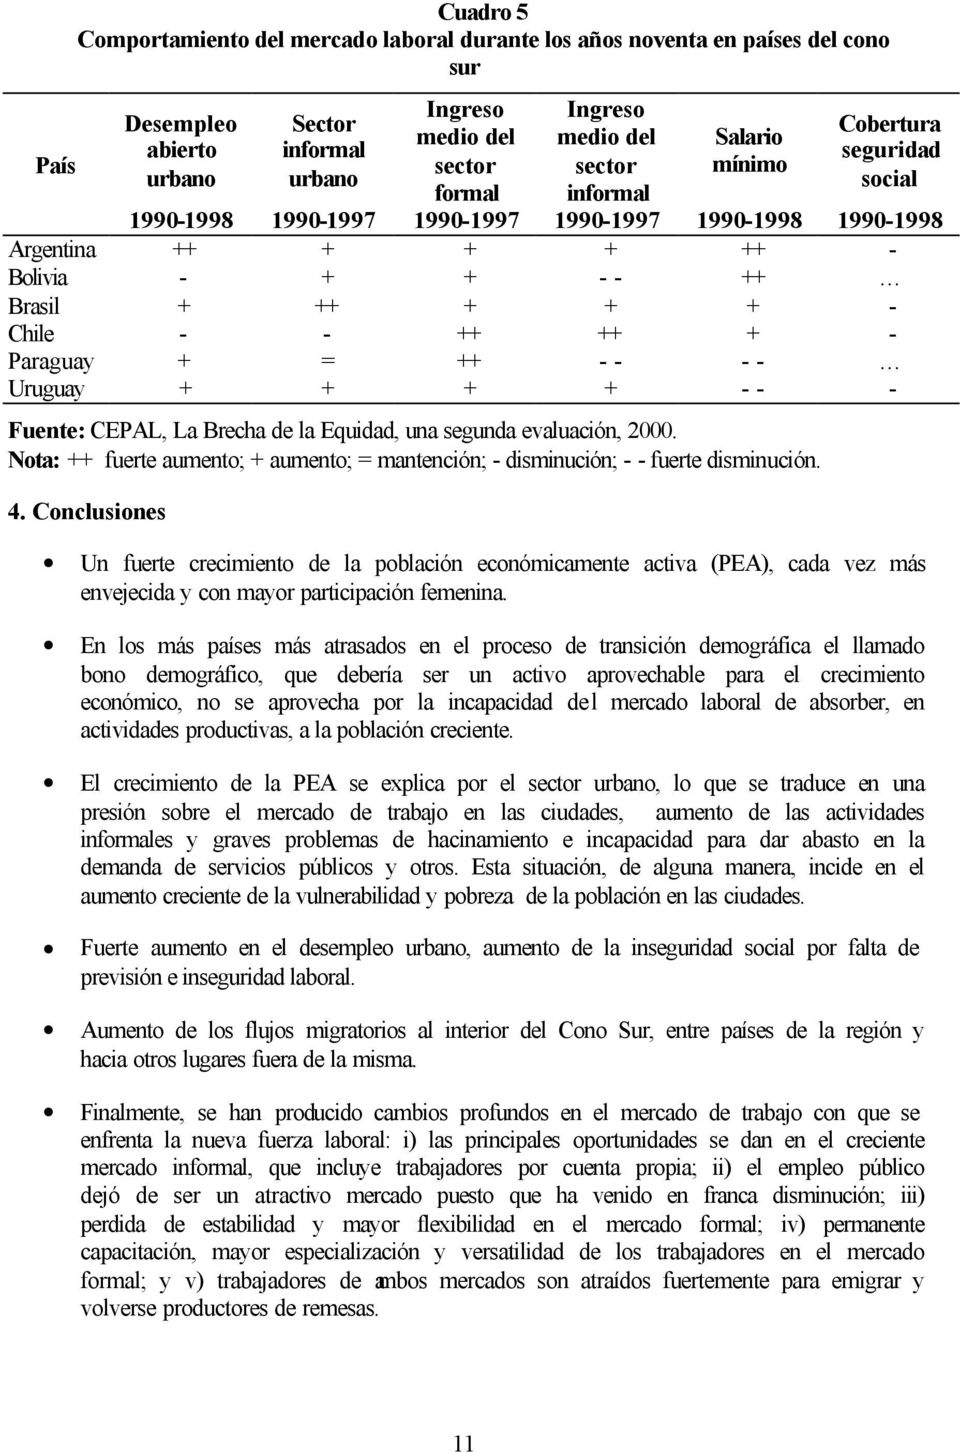 + - Paraguay + = ++ - - - - Uruguay + + + + - - - Fuente: CEPAL, La Brecha de la Equidad, una segunda evaluación, 2000.